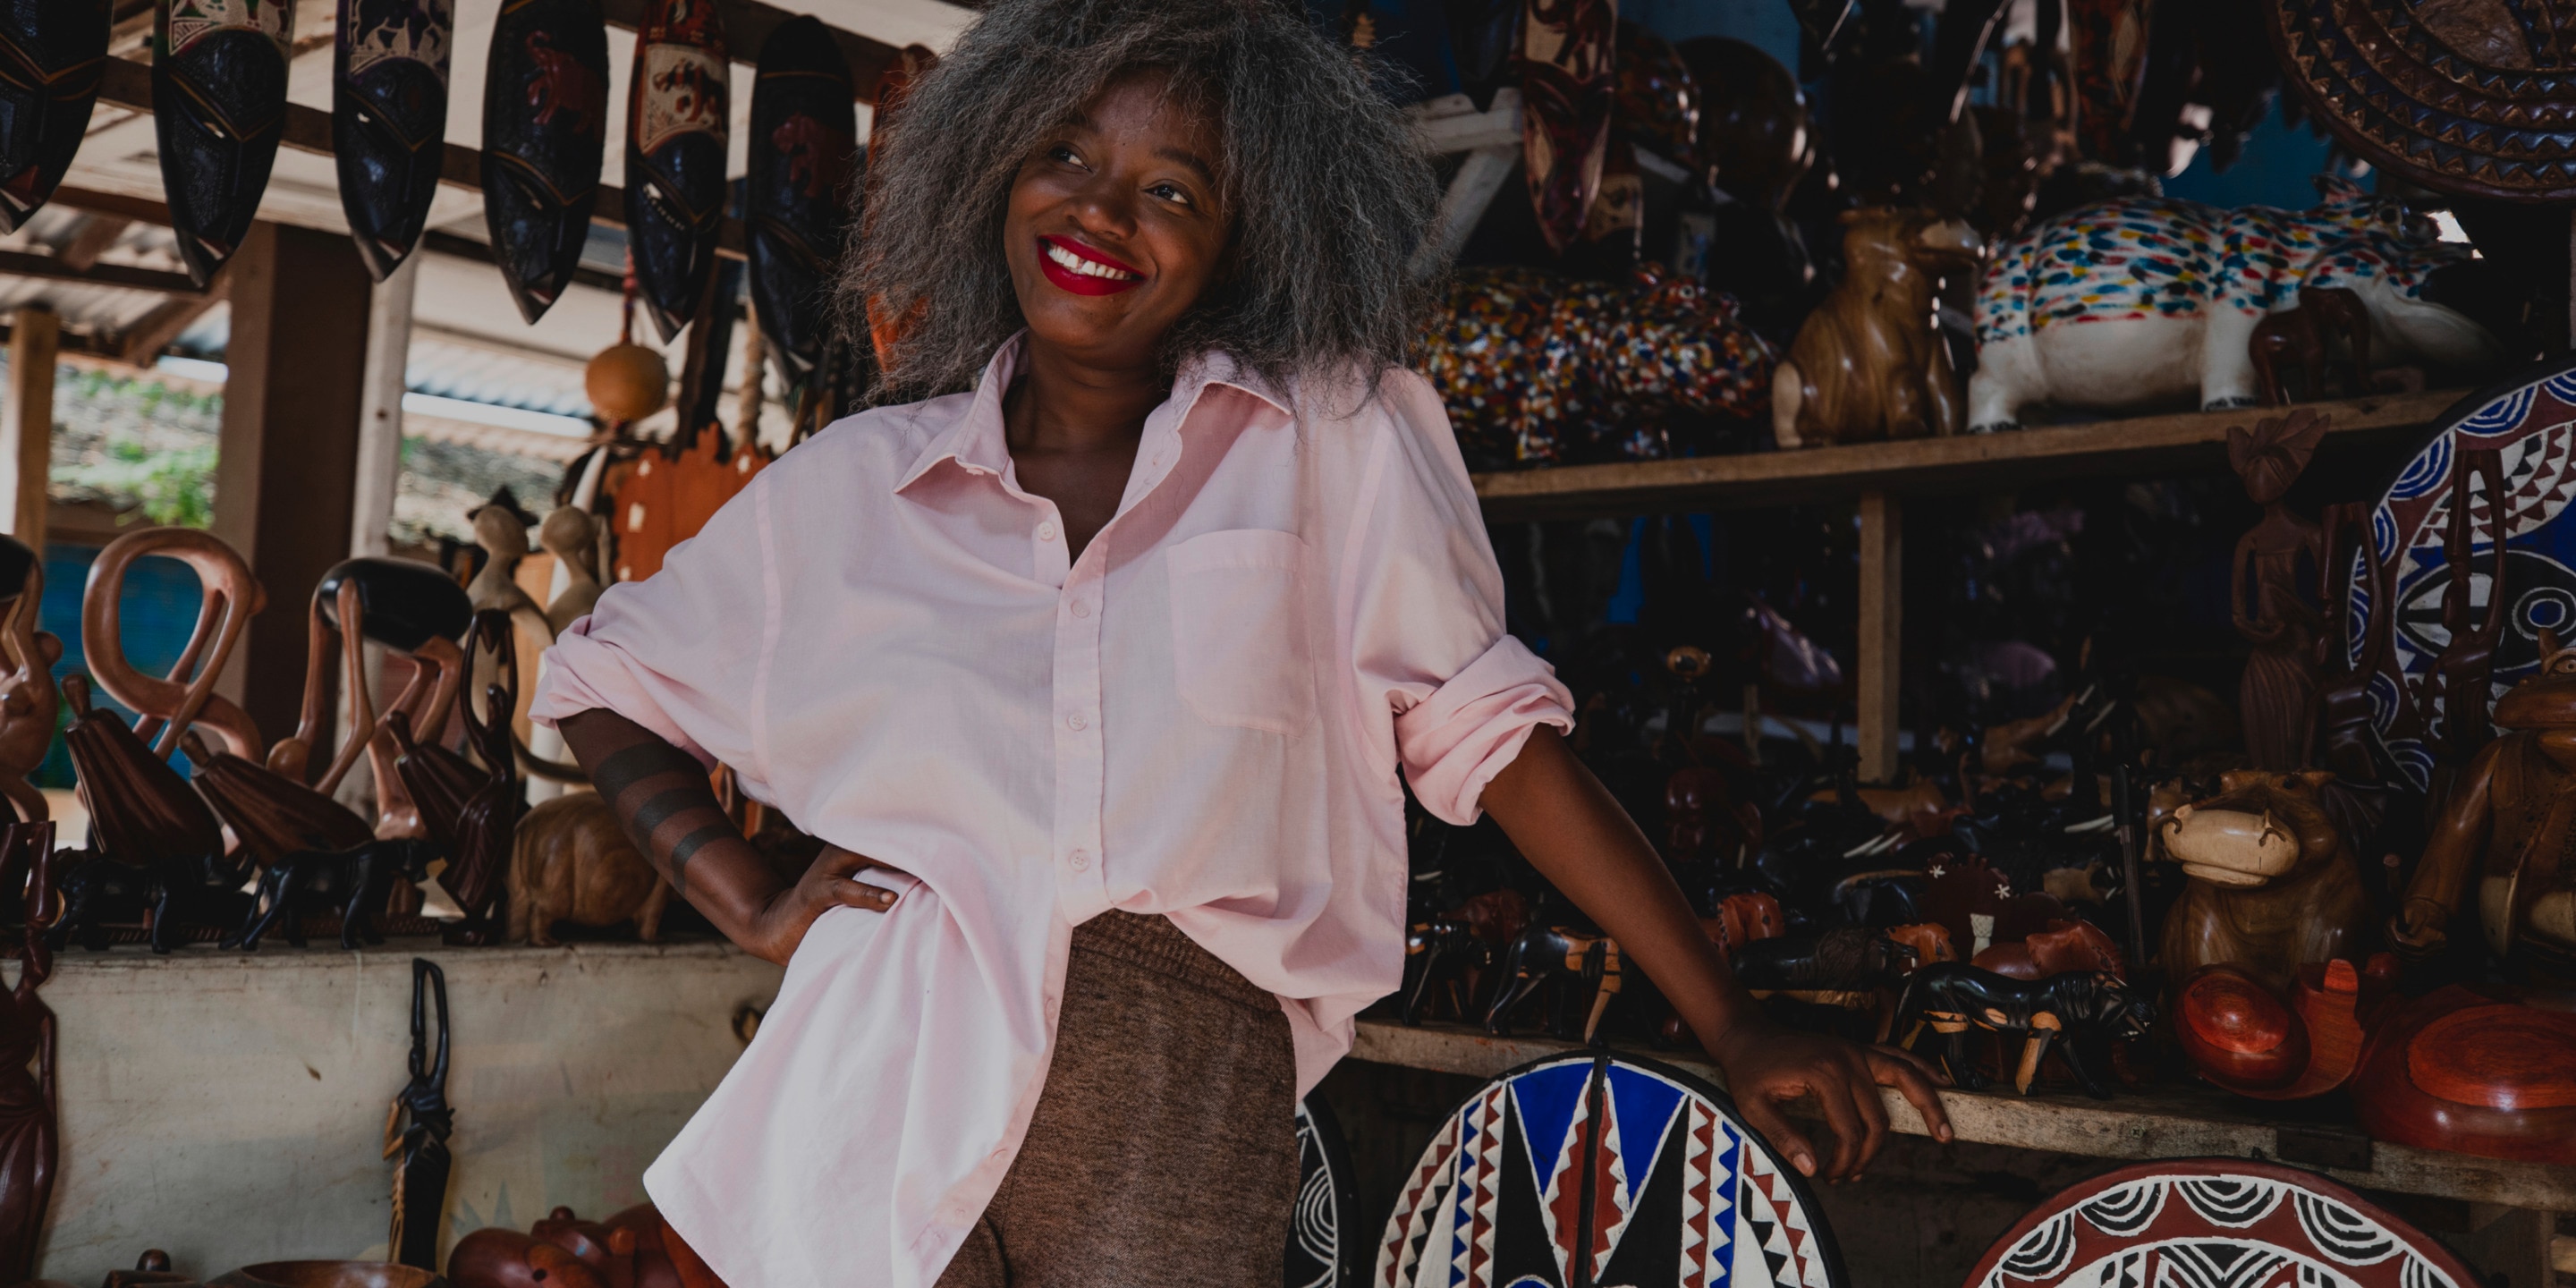 La diseñadora de moda Rebecca Zoro sonriendo - dentro de una tienda de souvenirs africanos en una comunidad agrícola de cacao de Costa de Marfil.